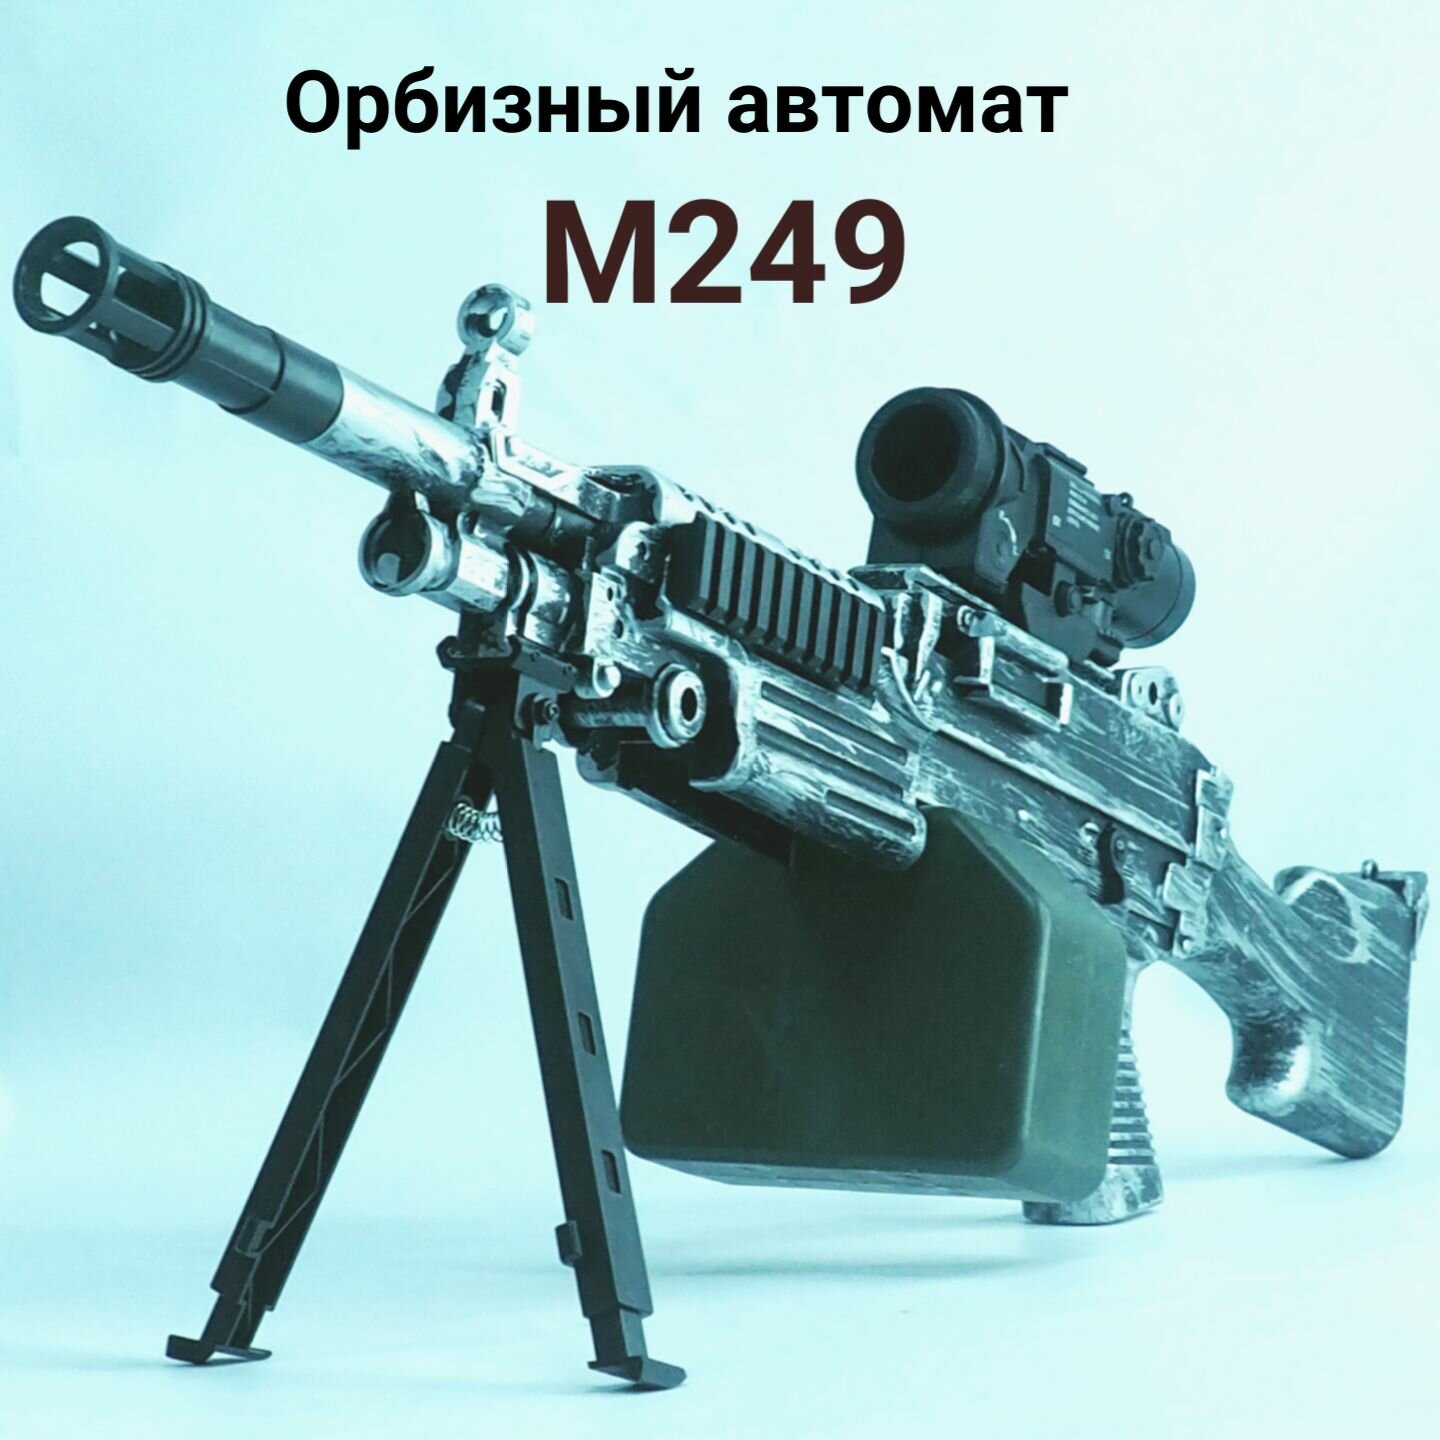 Детский орбизный пулемет М249. 5000 орбизов в комплекте.